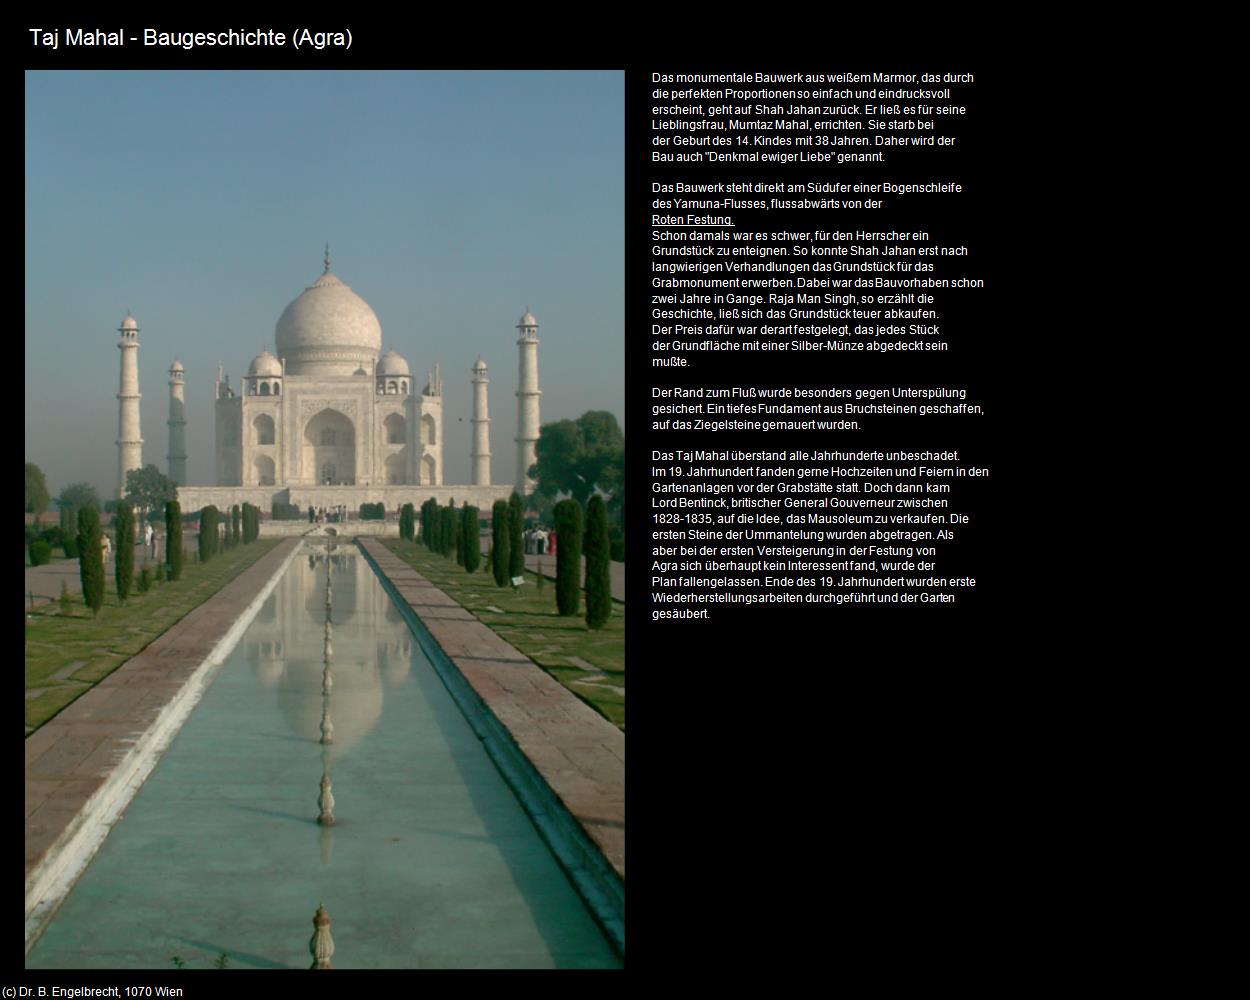 Taj Mahal - Baugeschichte (Agra) in Rajasthan - das Land der Könige(c)B.Engelbrecht